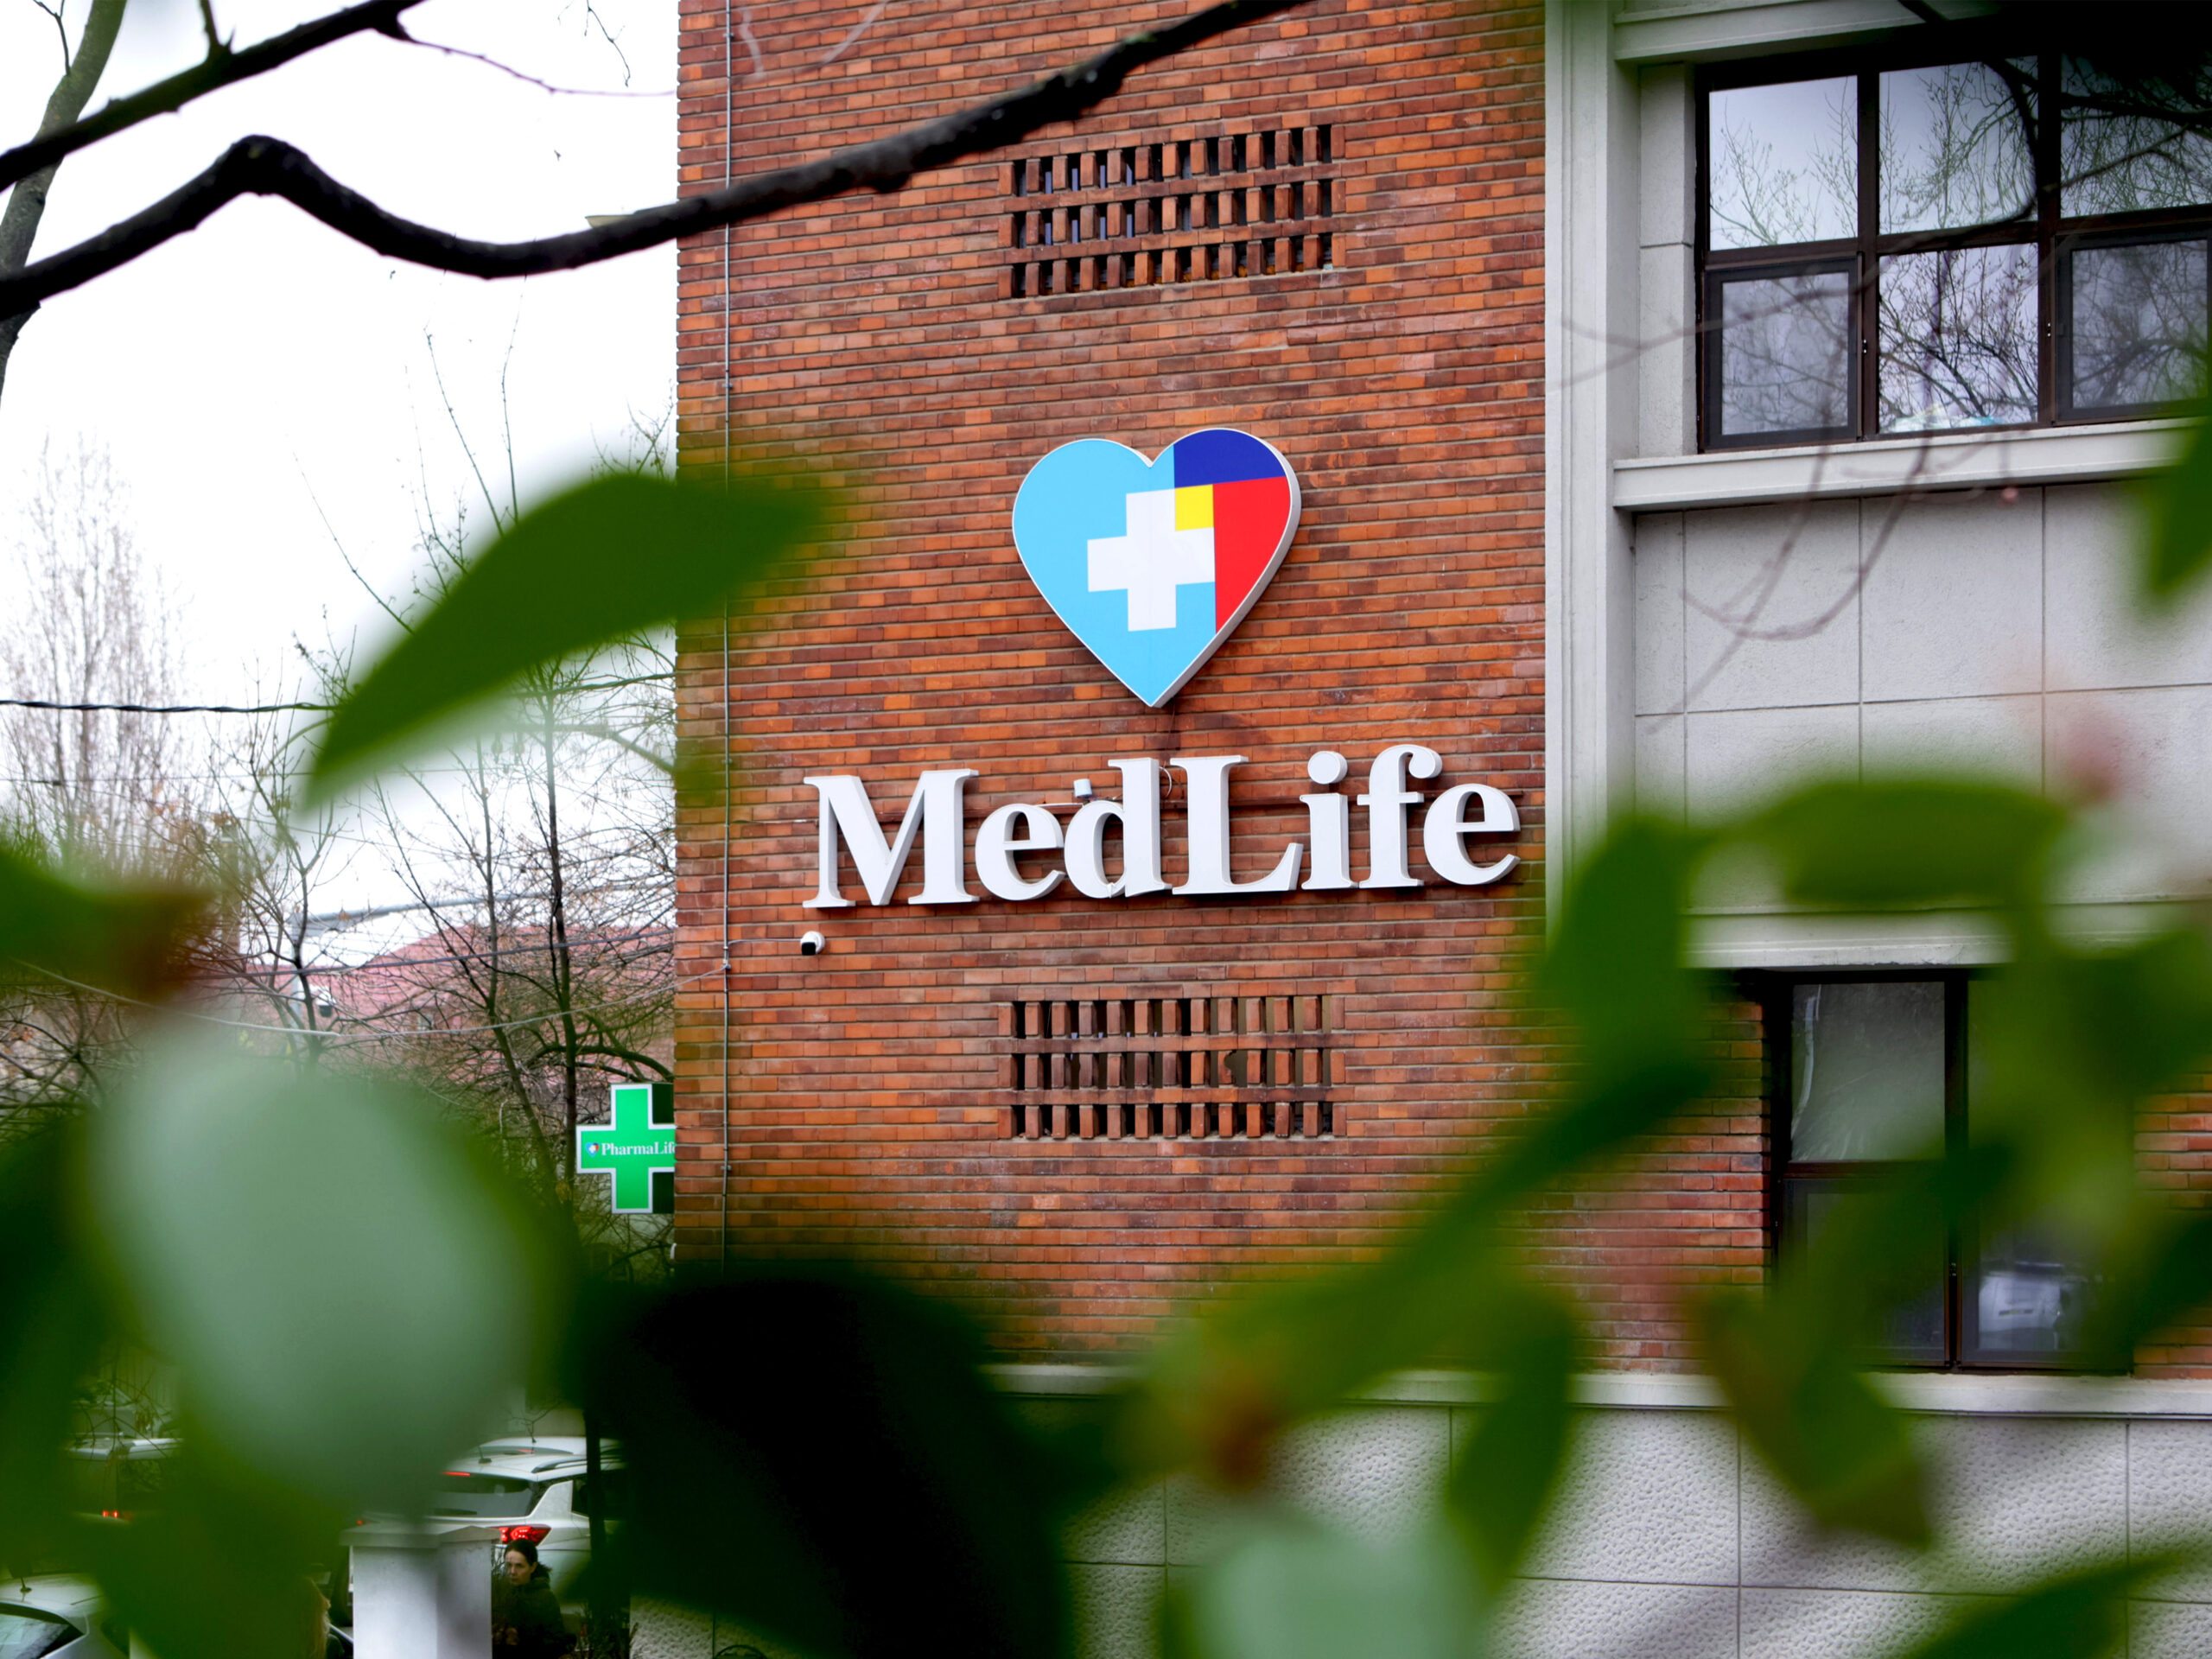 MedLife anunță o creștere de 22% a cifrei de afaceri consolidată pro forma în primul trimestru al acestui an, concomitent cu o creștere robustă a marjelor